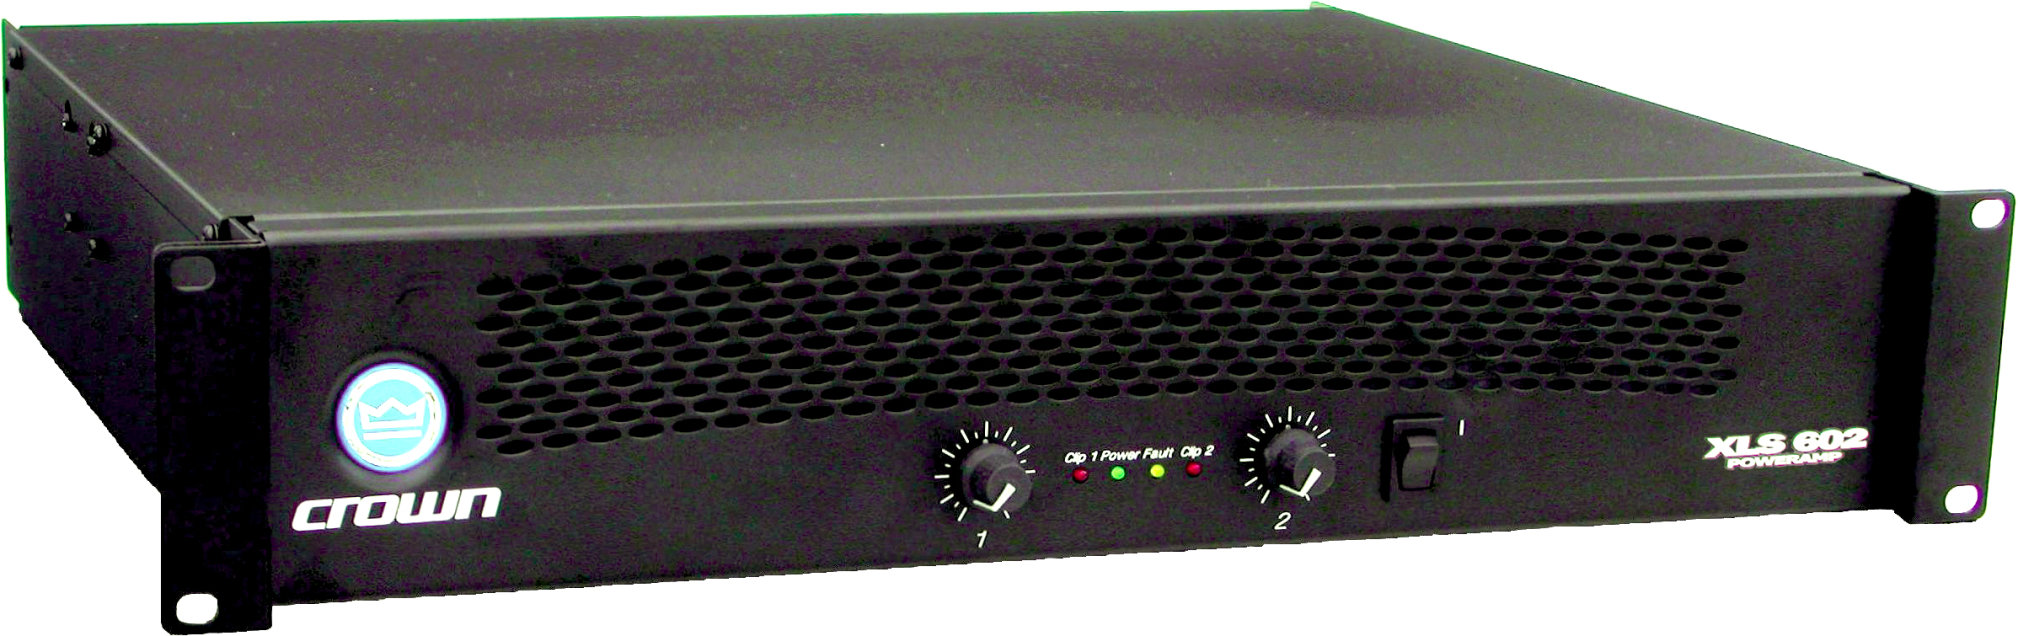 crown power amplifier